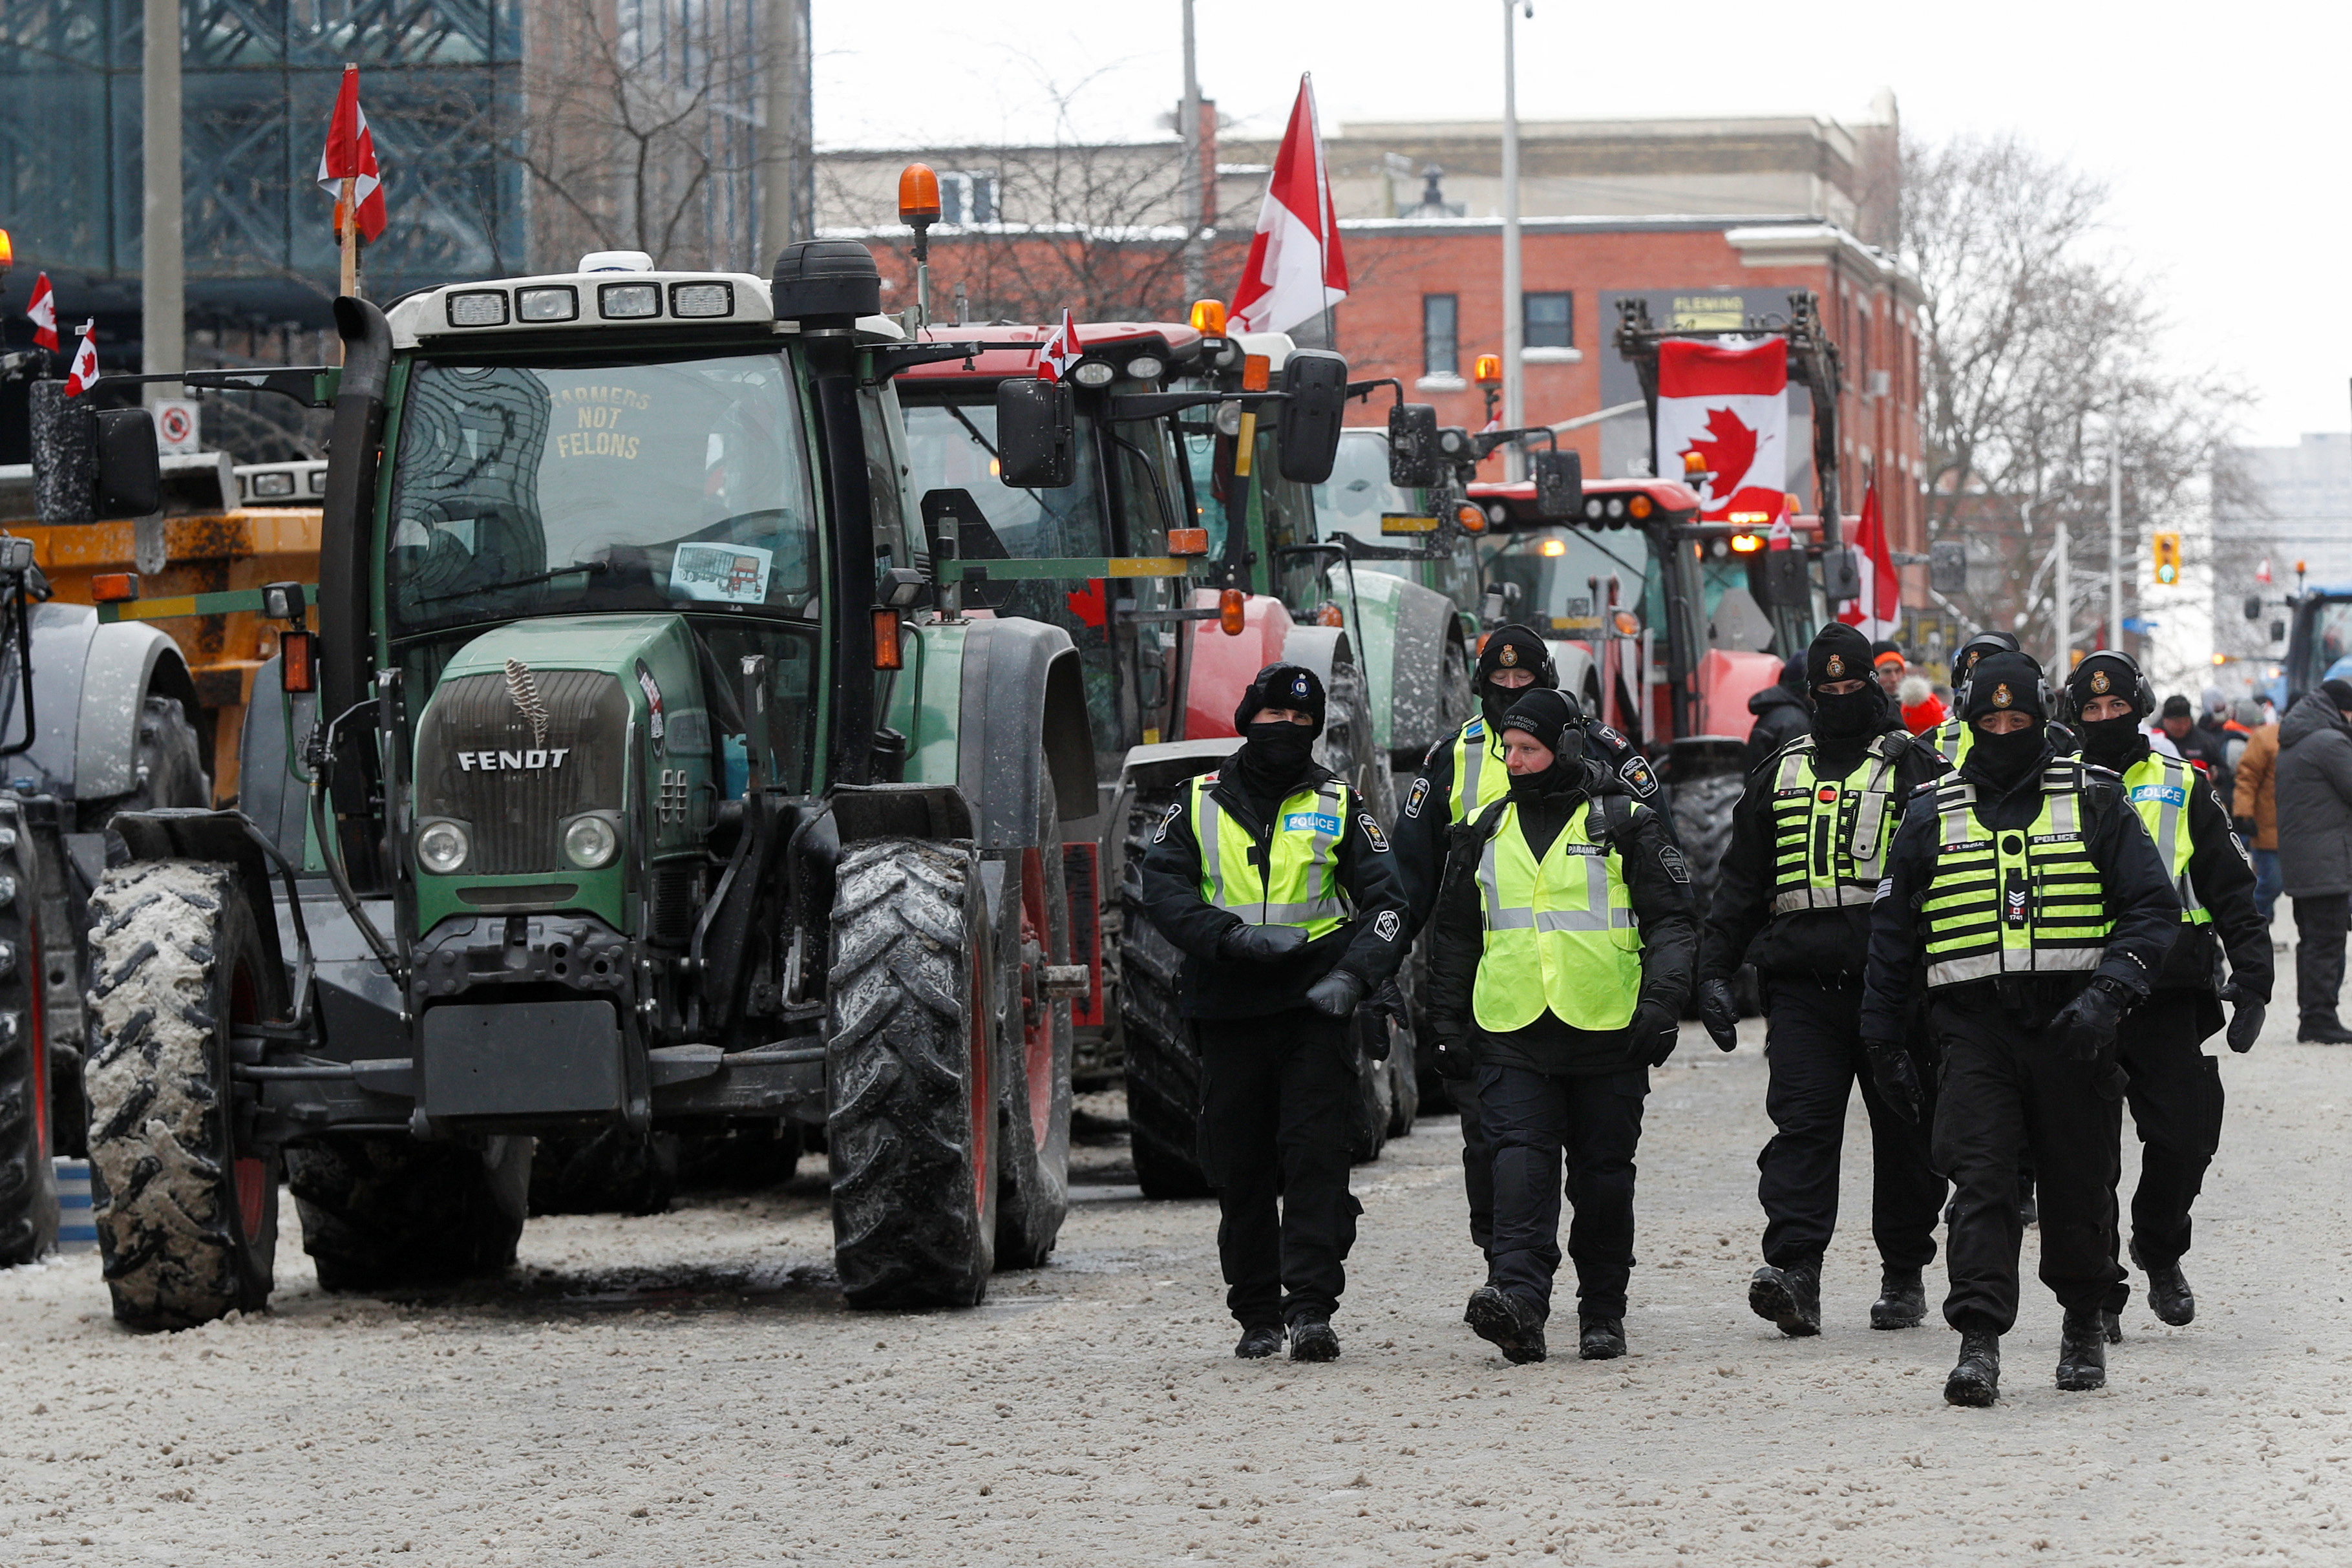 Los agentes de policía pasan junto a los tractores estacionados, mientras los camioneros y los simpatizantes continúan protestando por los mandatos de vacunación contra la enfermedad del coronavirus (COVID-19), en Ottawa, Ontario, Canadá, el 6 de febrero de 2022. REUTERS/Lars Hagberg